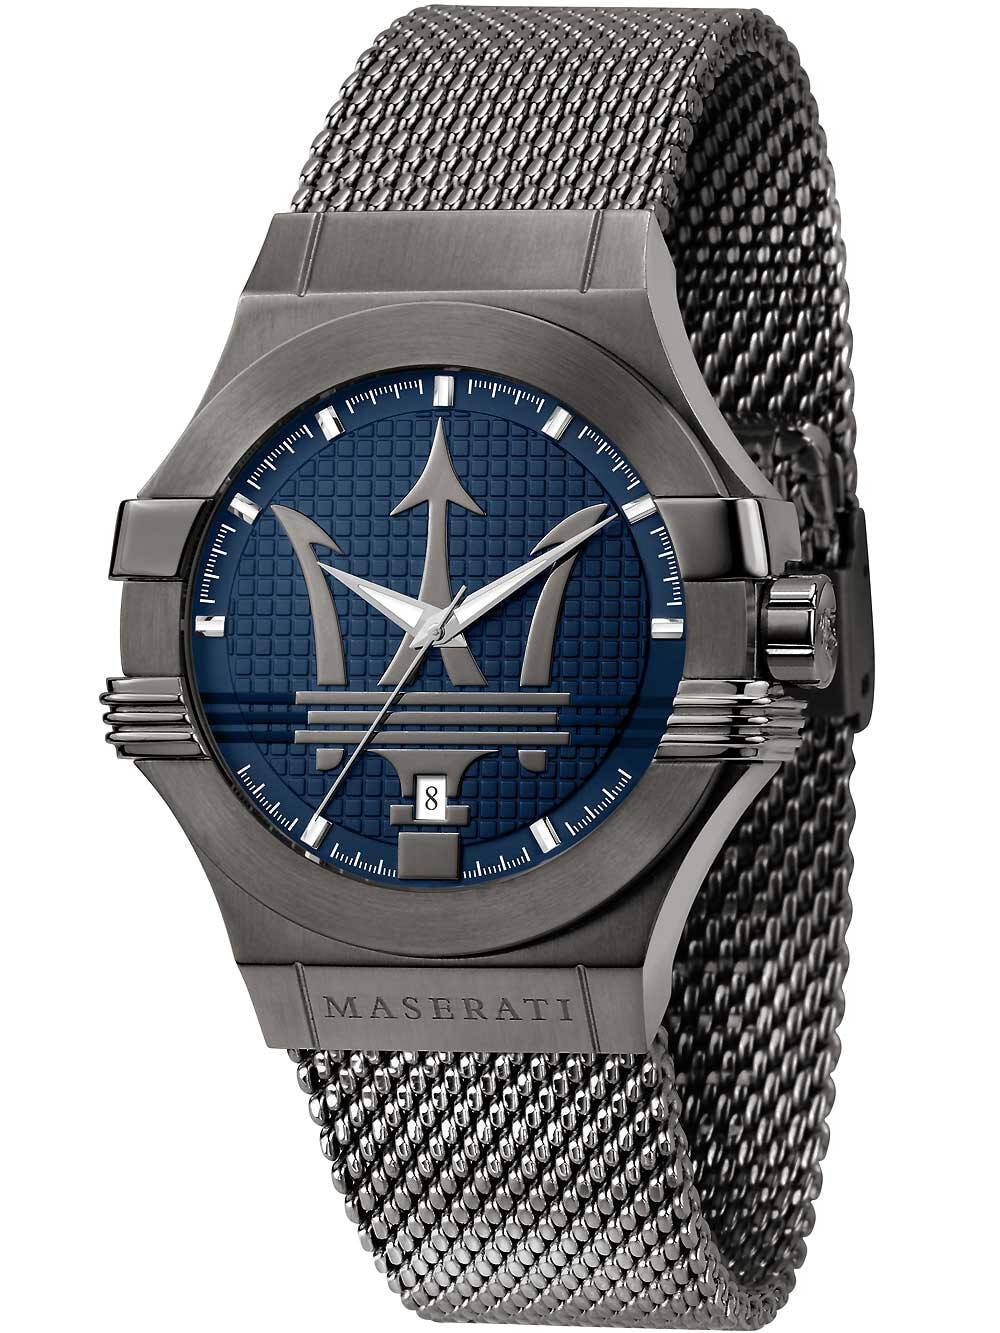 Мужские наручные часы со стальным браслетом Maserati R8853108005 Potenza mens watch 42mm 10ATM